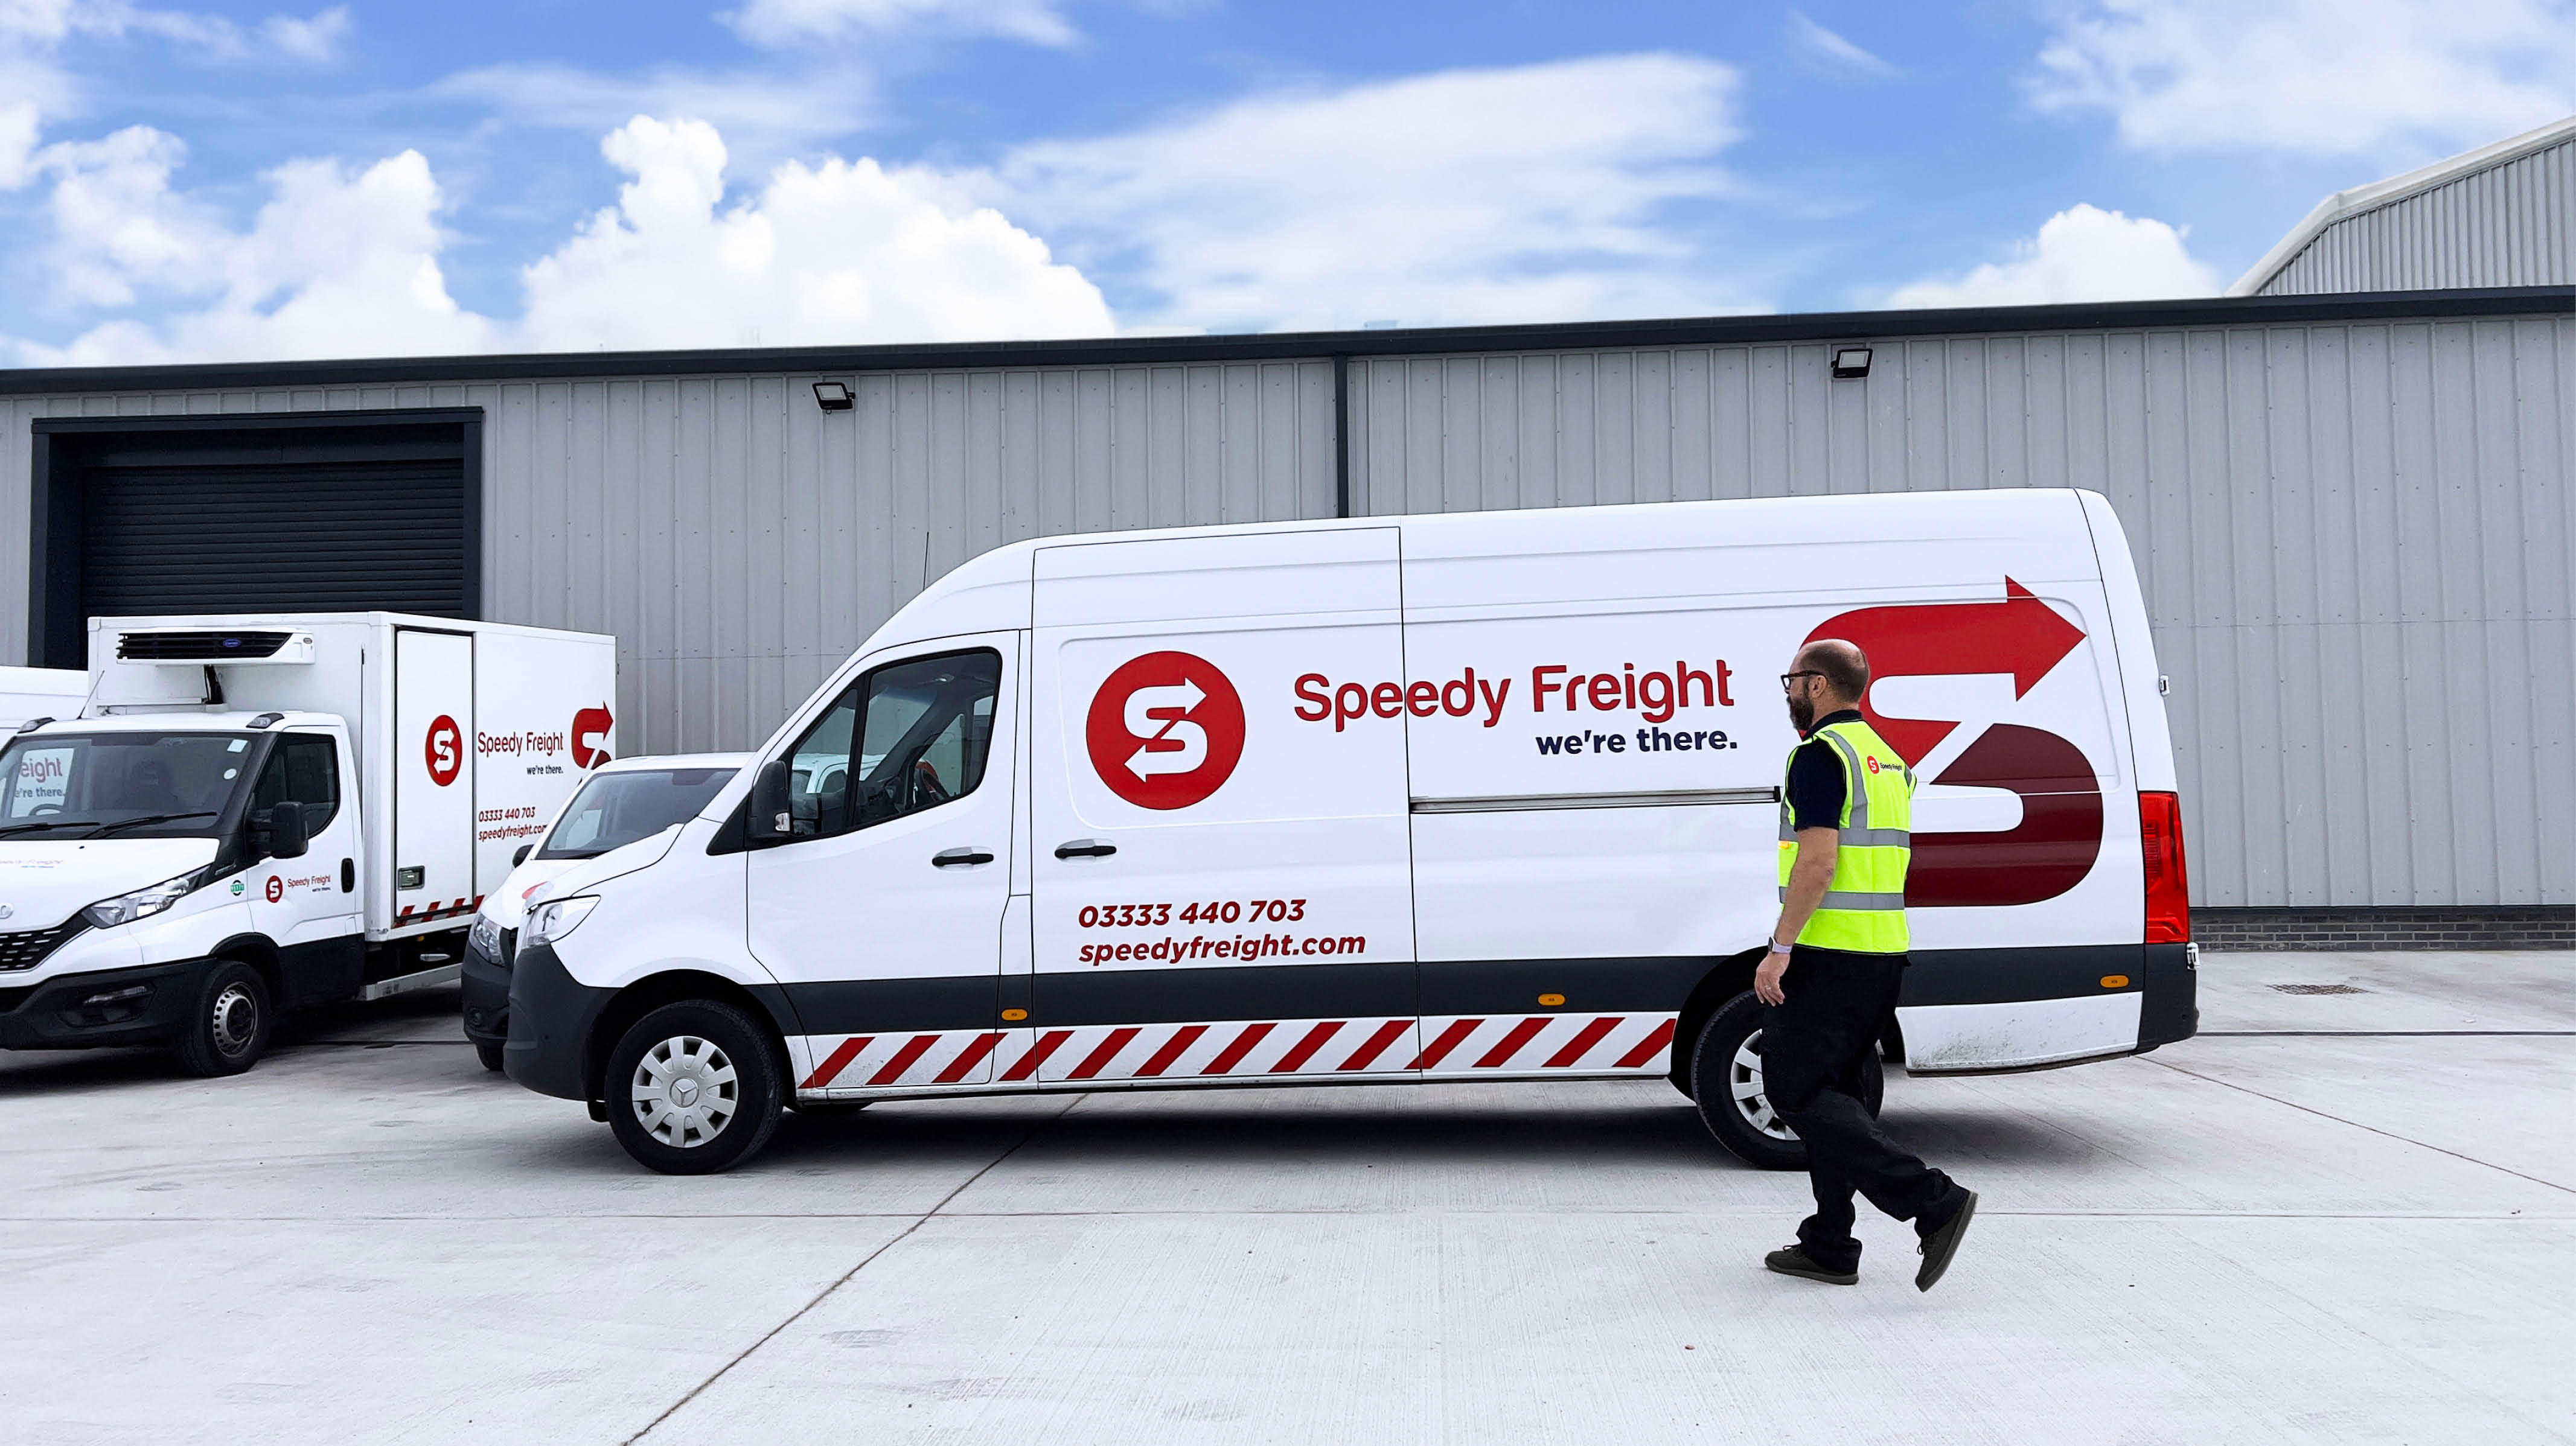 Speedy Freight Dublin & Ireland